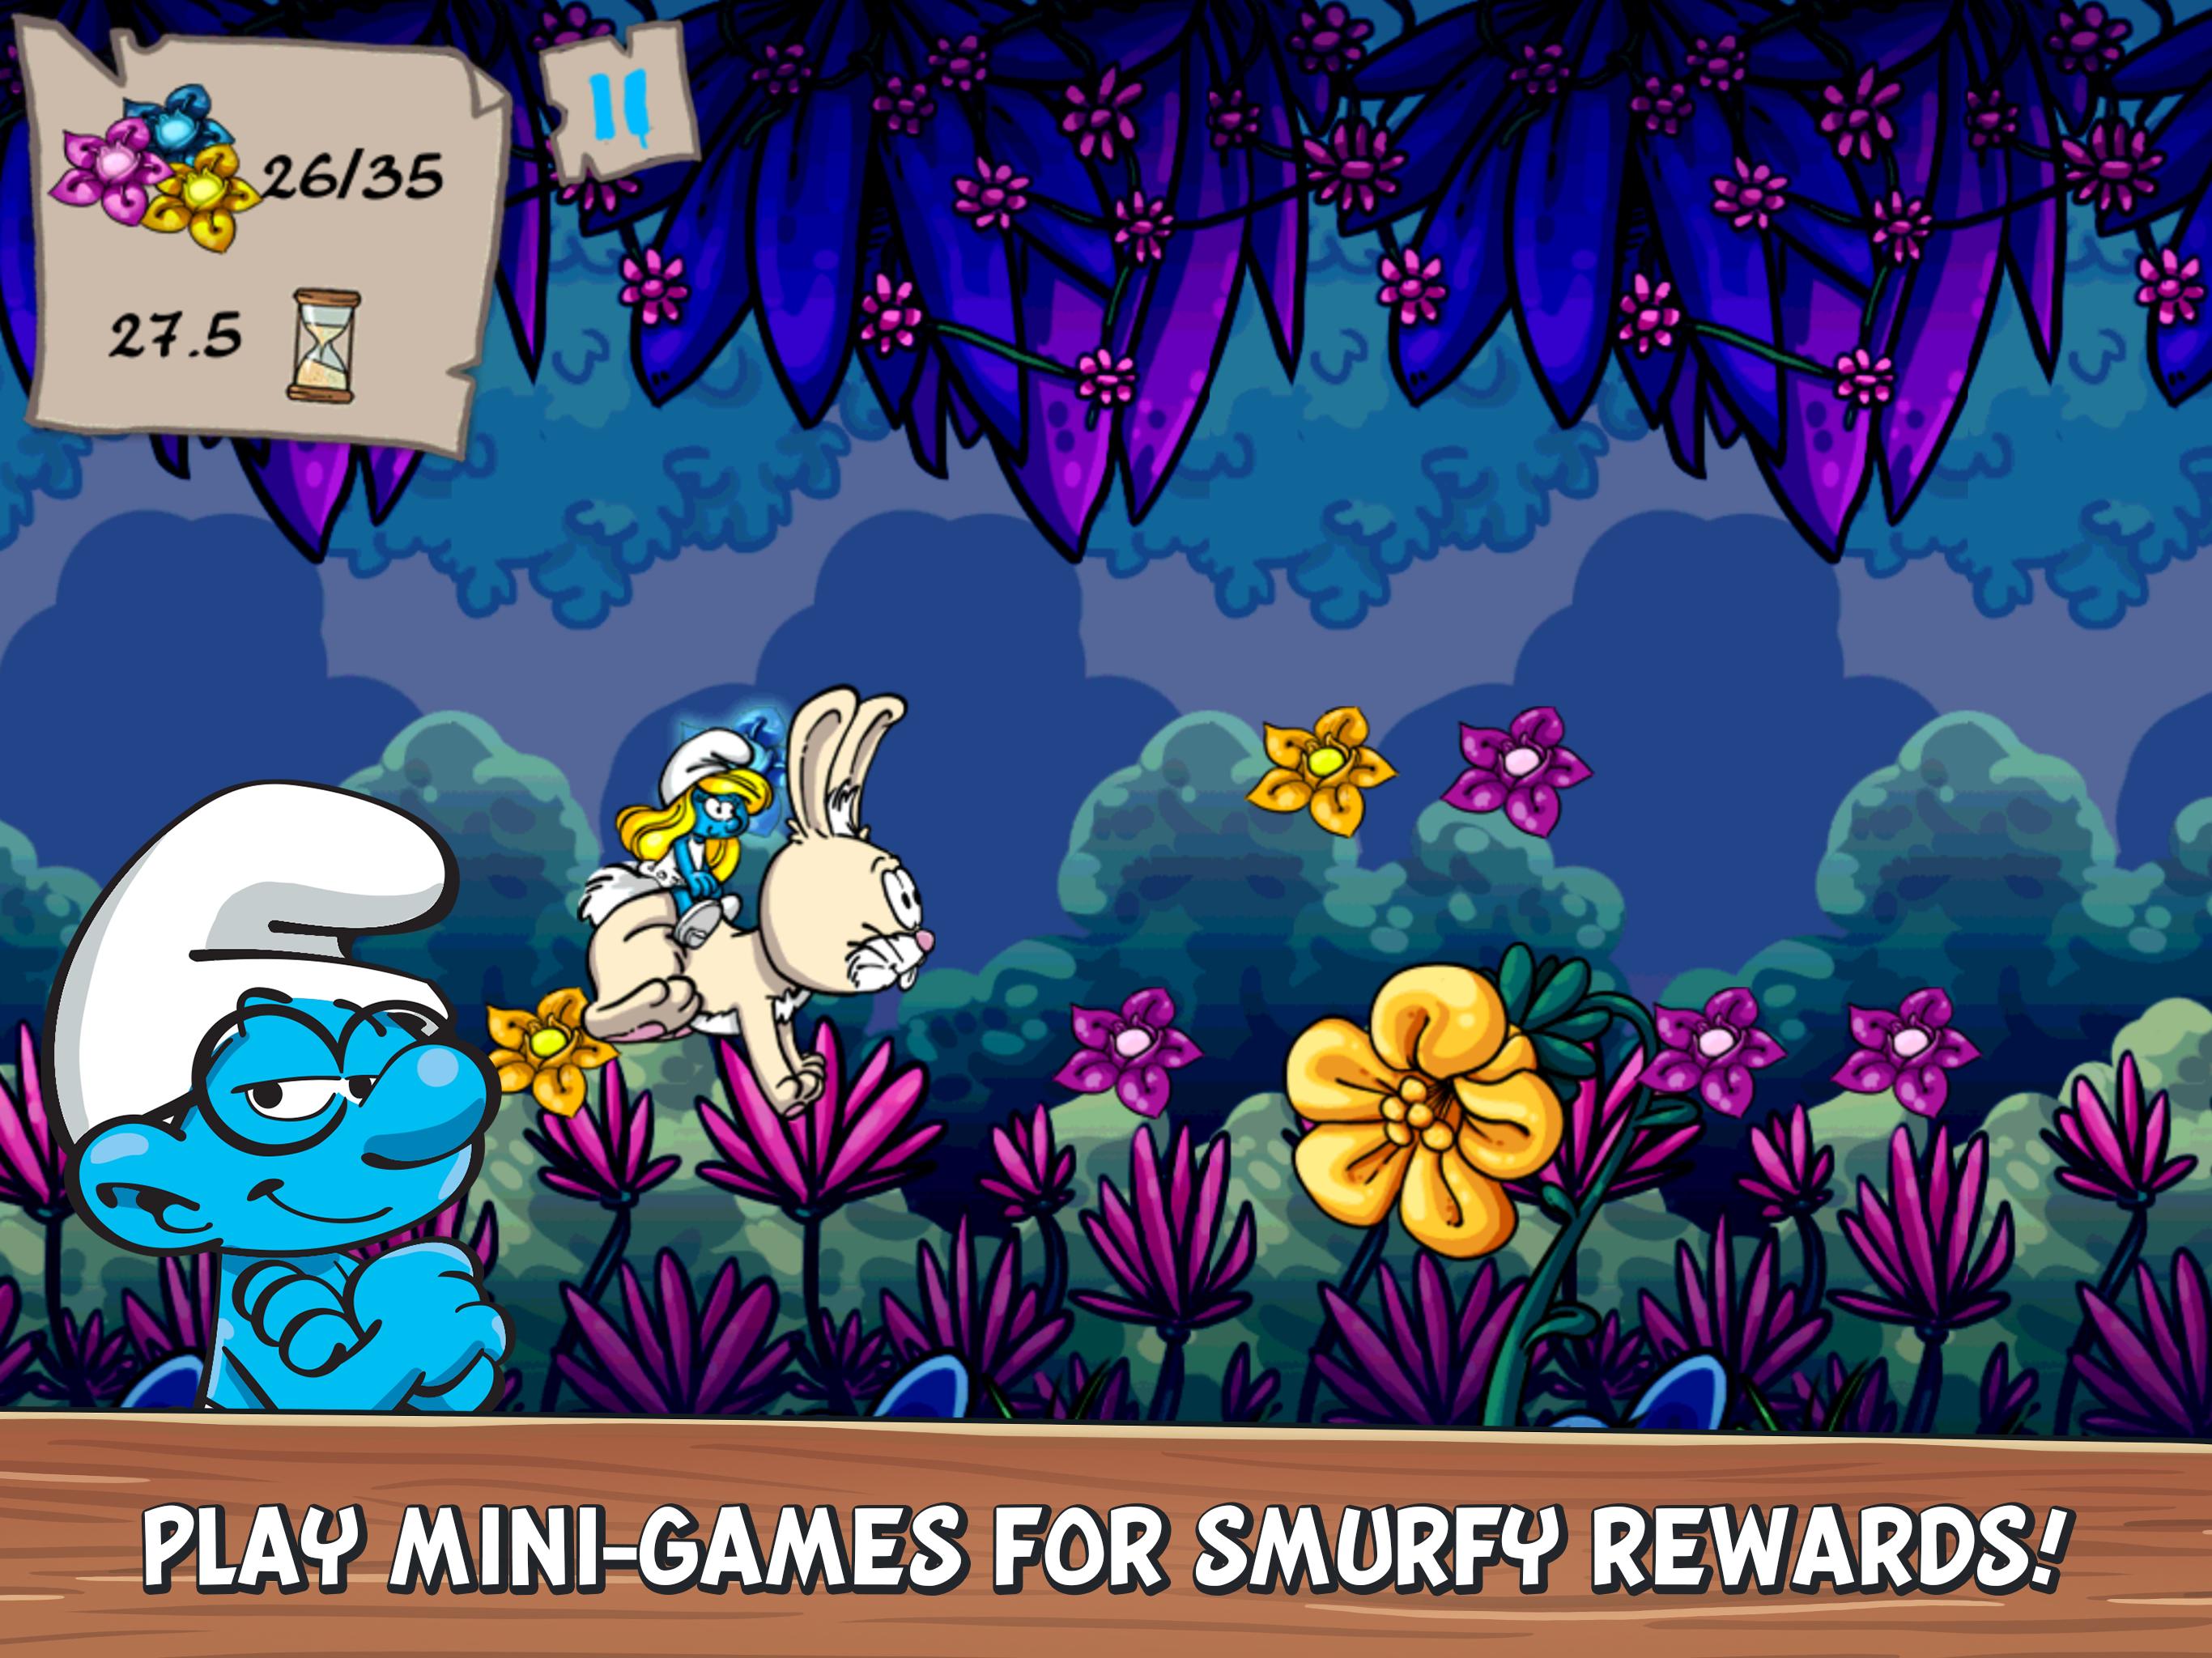 Smurfs' Village 2.01.0 Screenshot 11